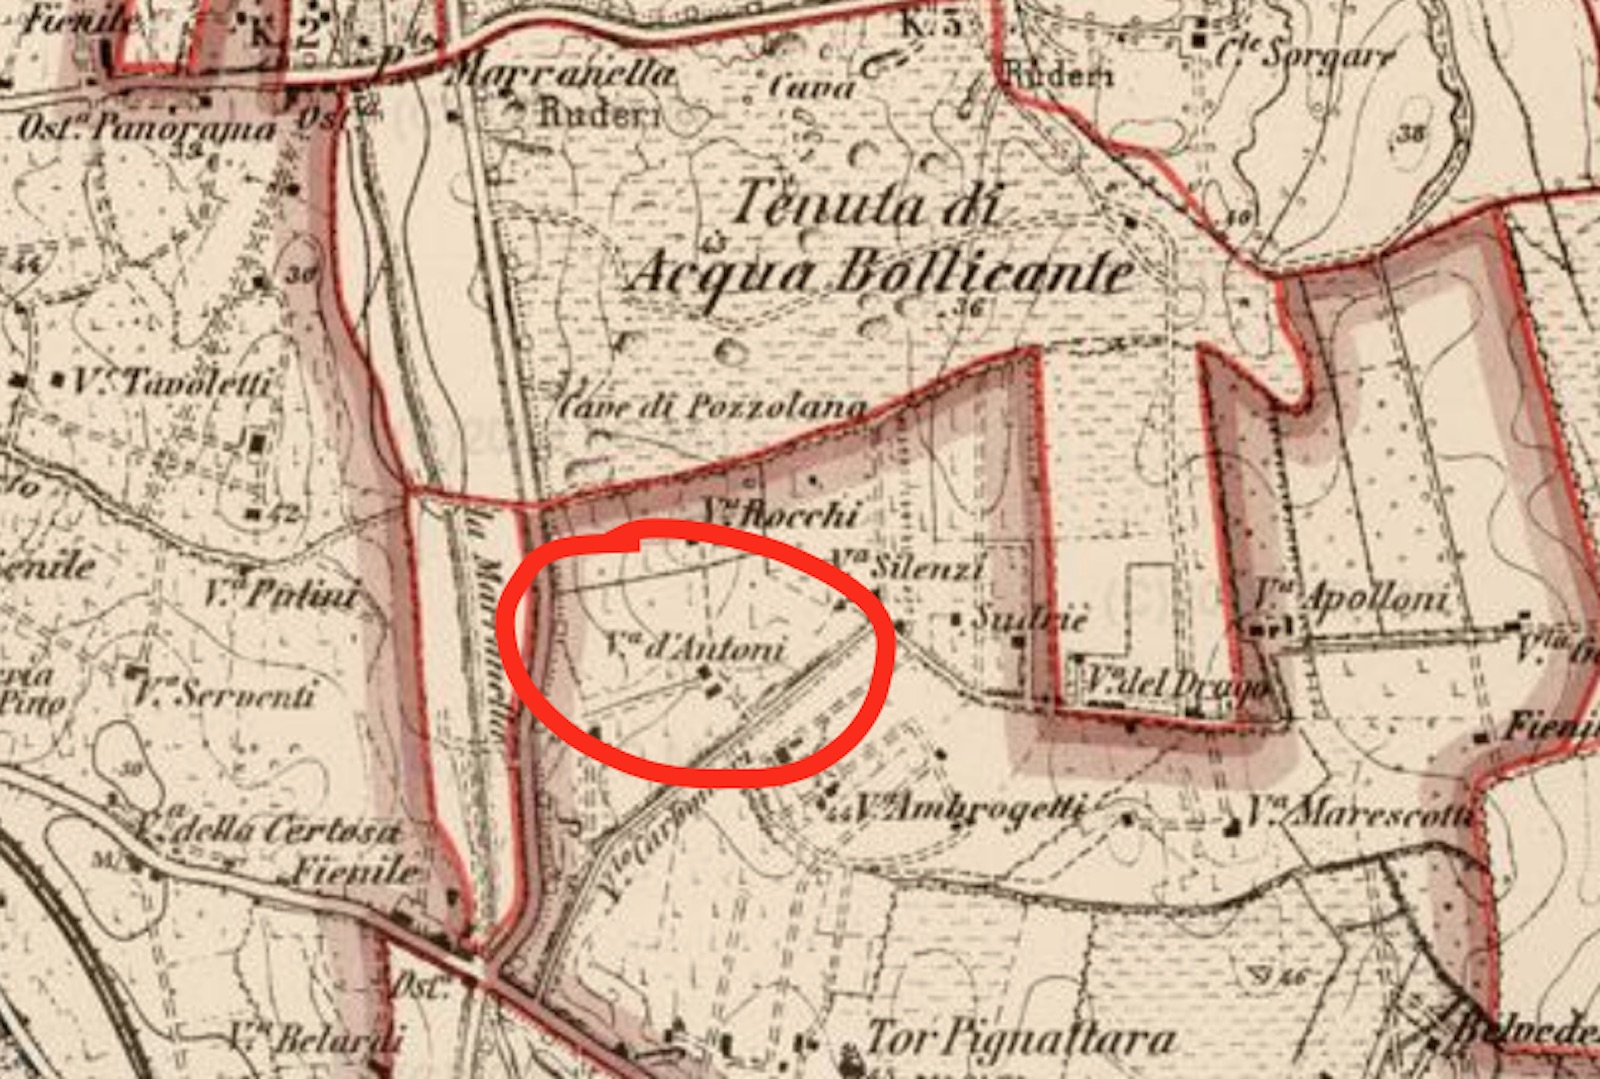 Ubicazione del casale Mengoni-D'Antoni su mappa IGMI del 1907